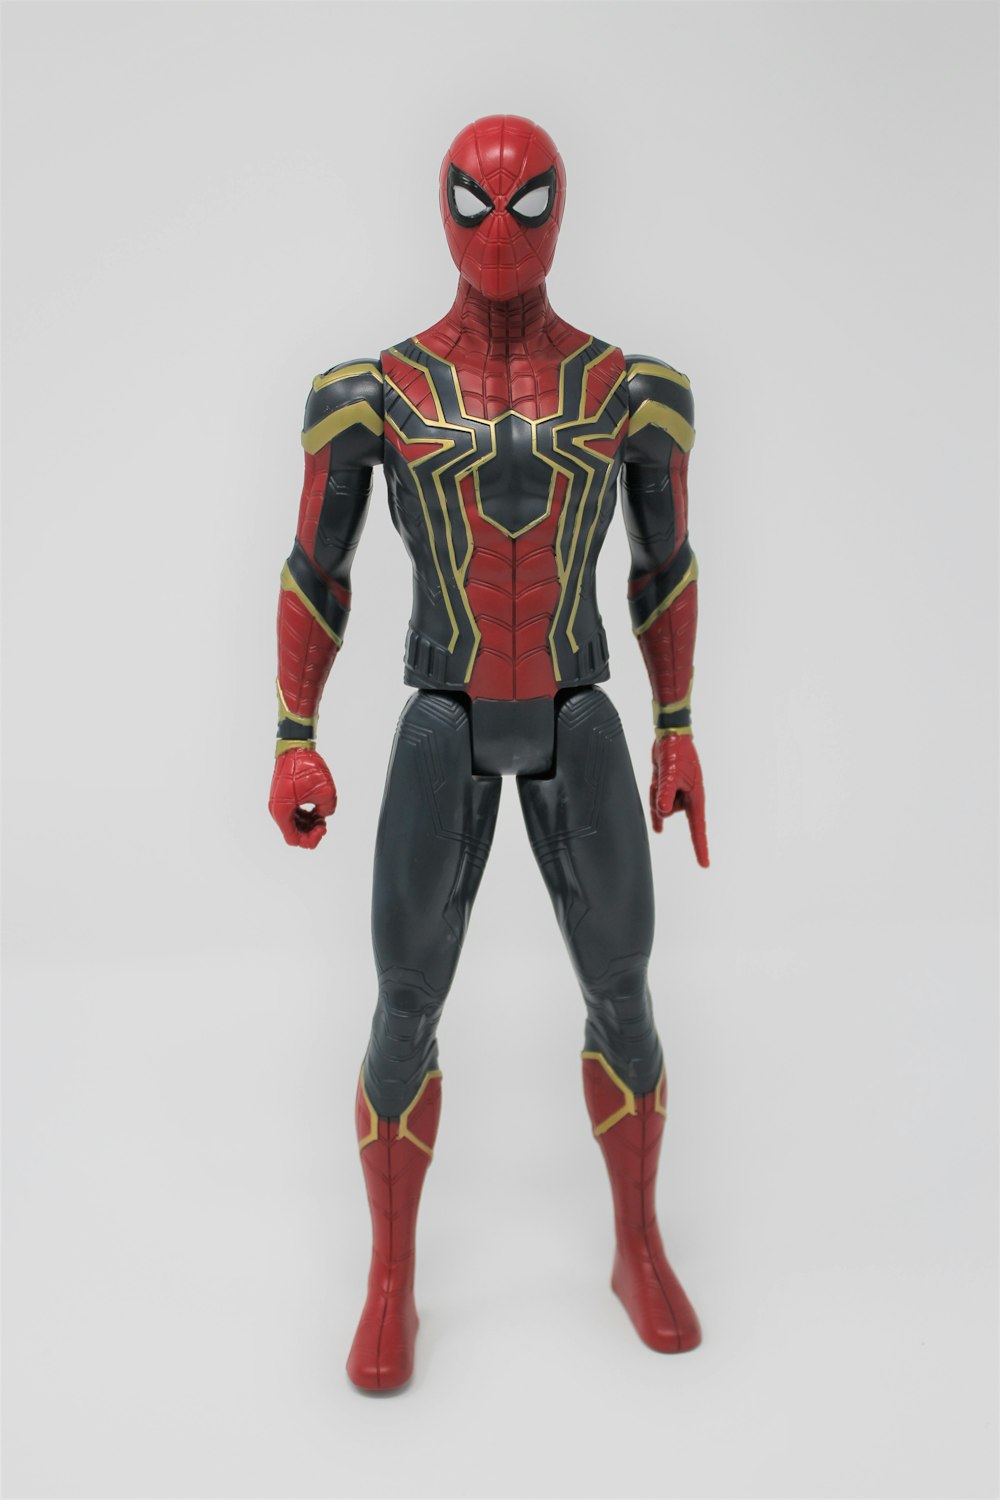 Marvel's Spider-Man-Actionfigur in seinem Iron Spider-Anzug